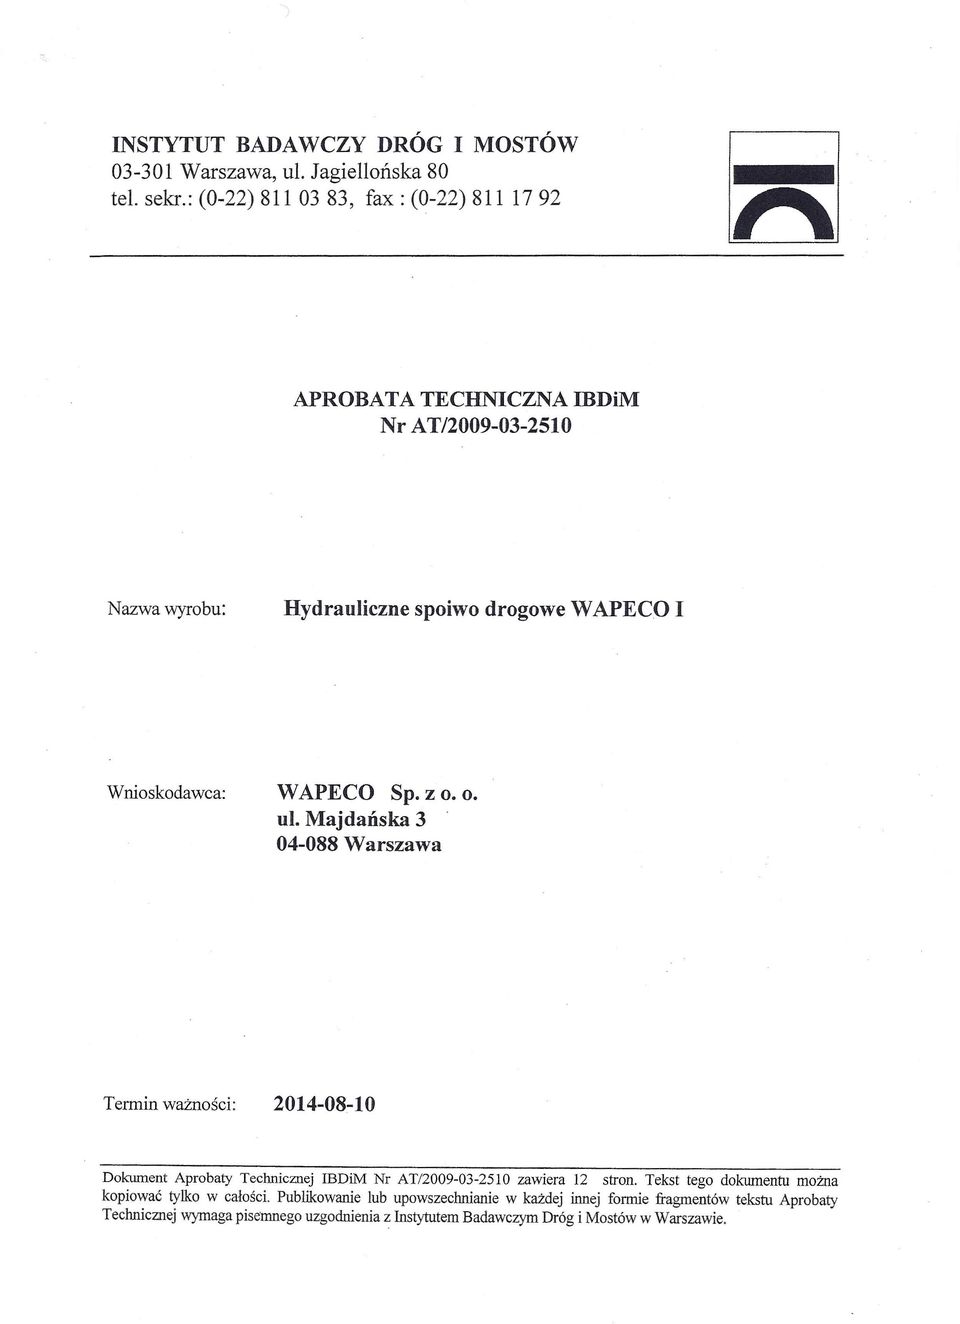 WAPECO Sp. z o. o. ul. Majdańska 3 04-088 Warszawa Termin ważności: 2014-08-10 Dokument Aprobaty Technicznej IBDiM Nr AT/2009-03-2510 zawiera 12 stron.